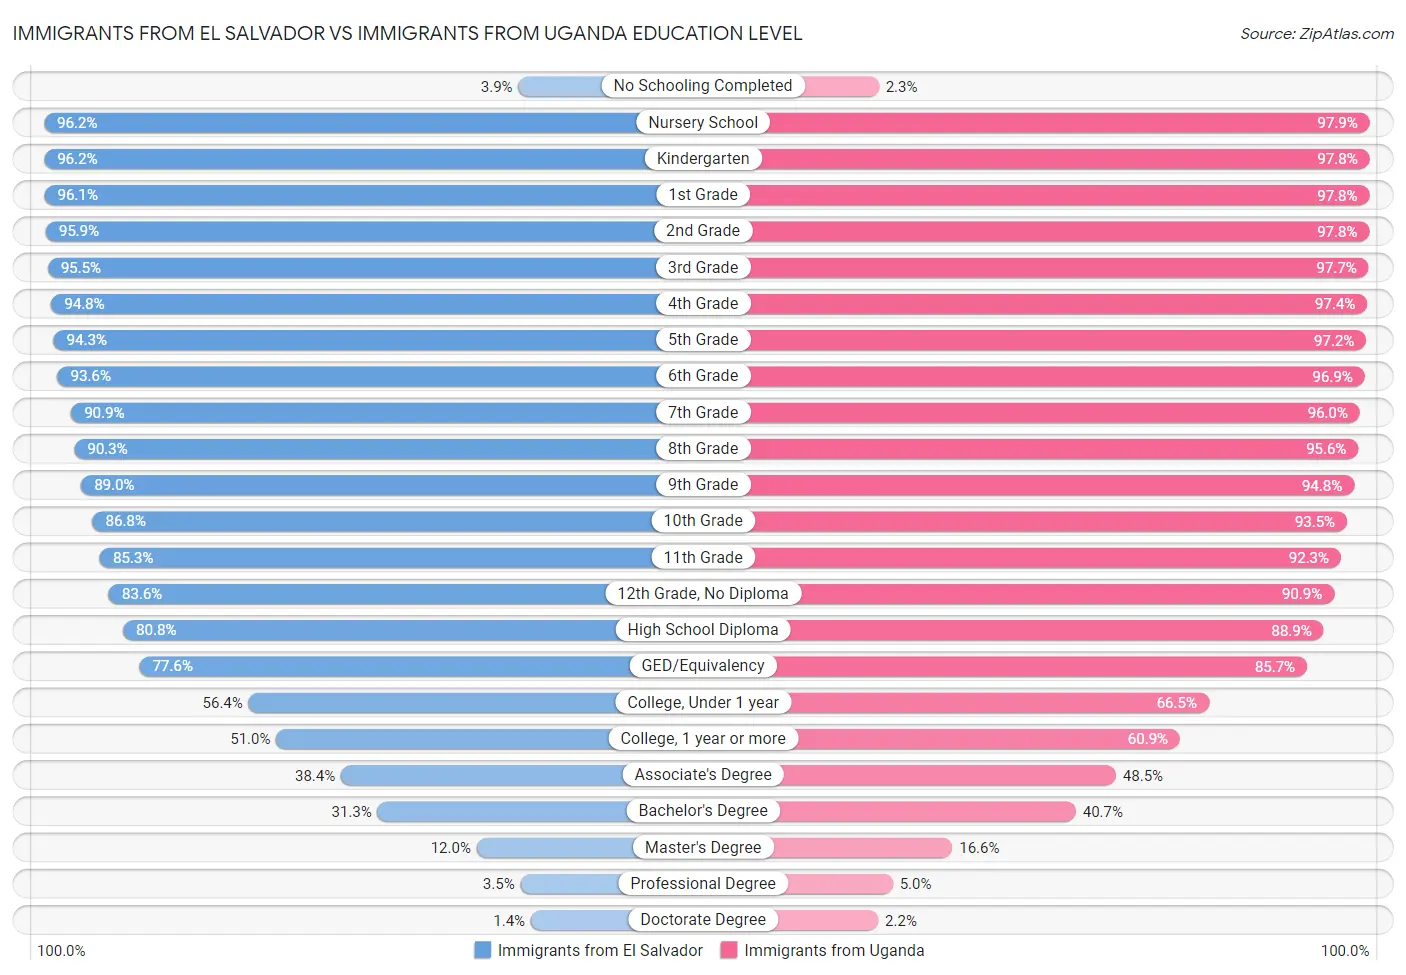 Immigrants from El Salvador vs Immigrants from Uganda Education Level